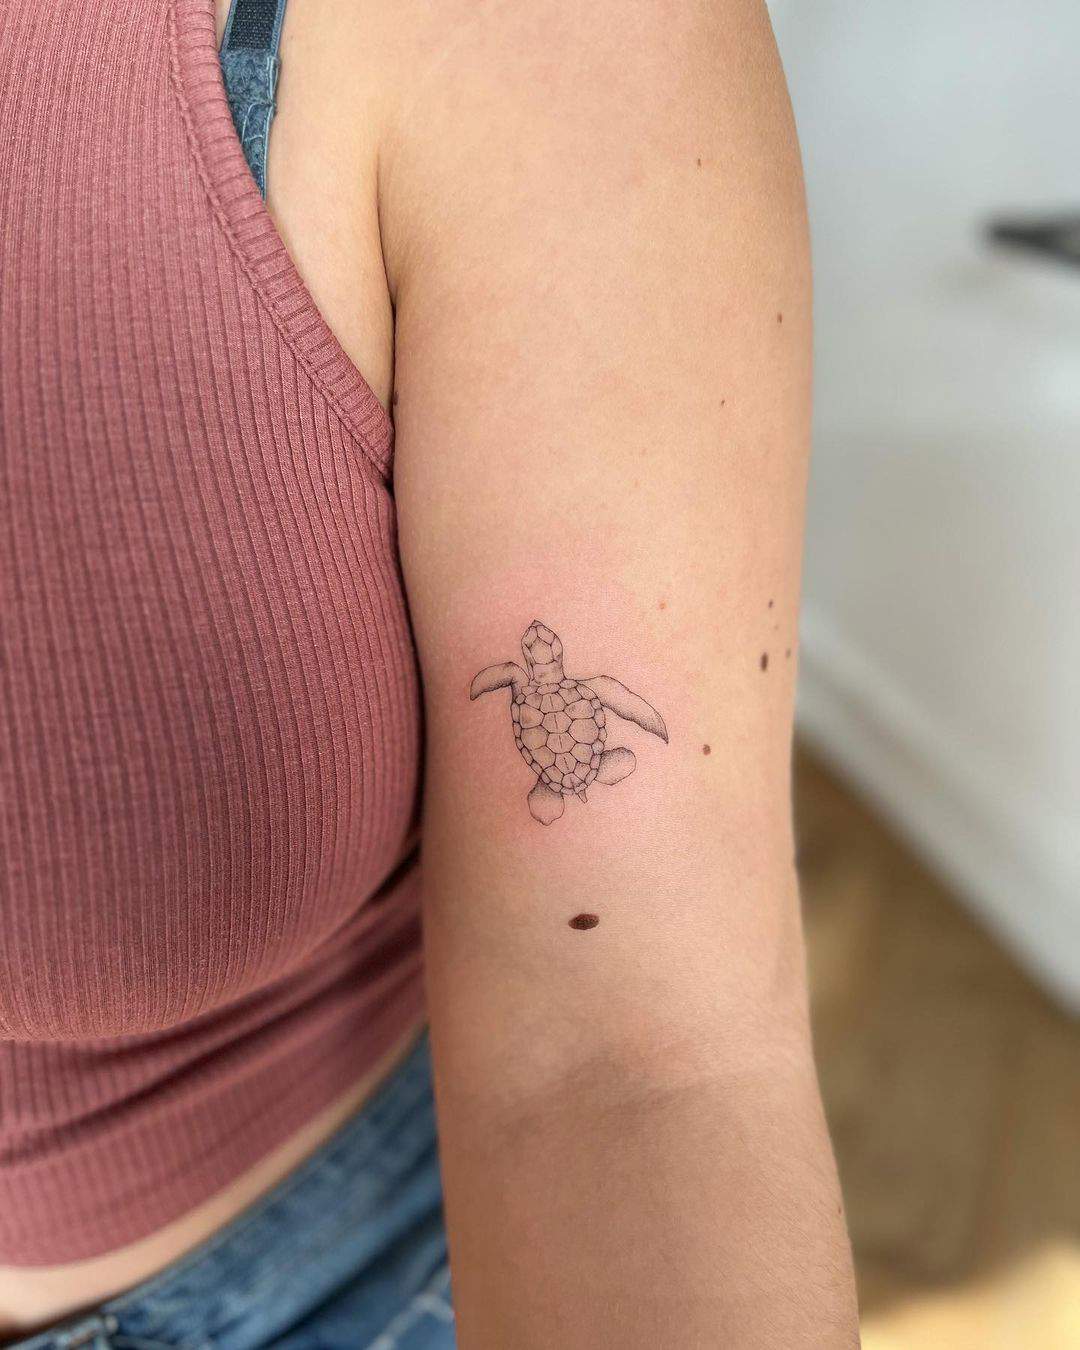 Tatuaje de tortuga en el brazo